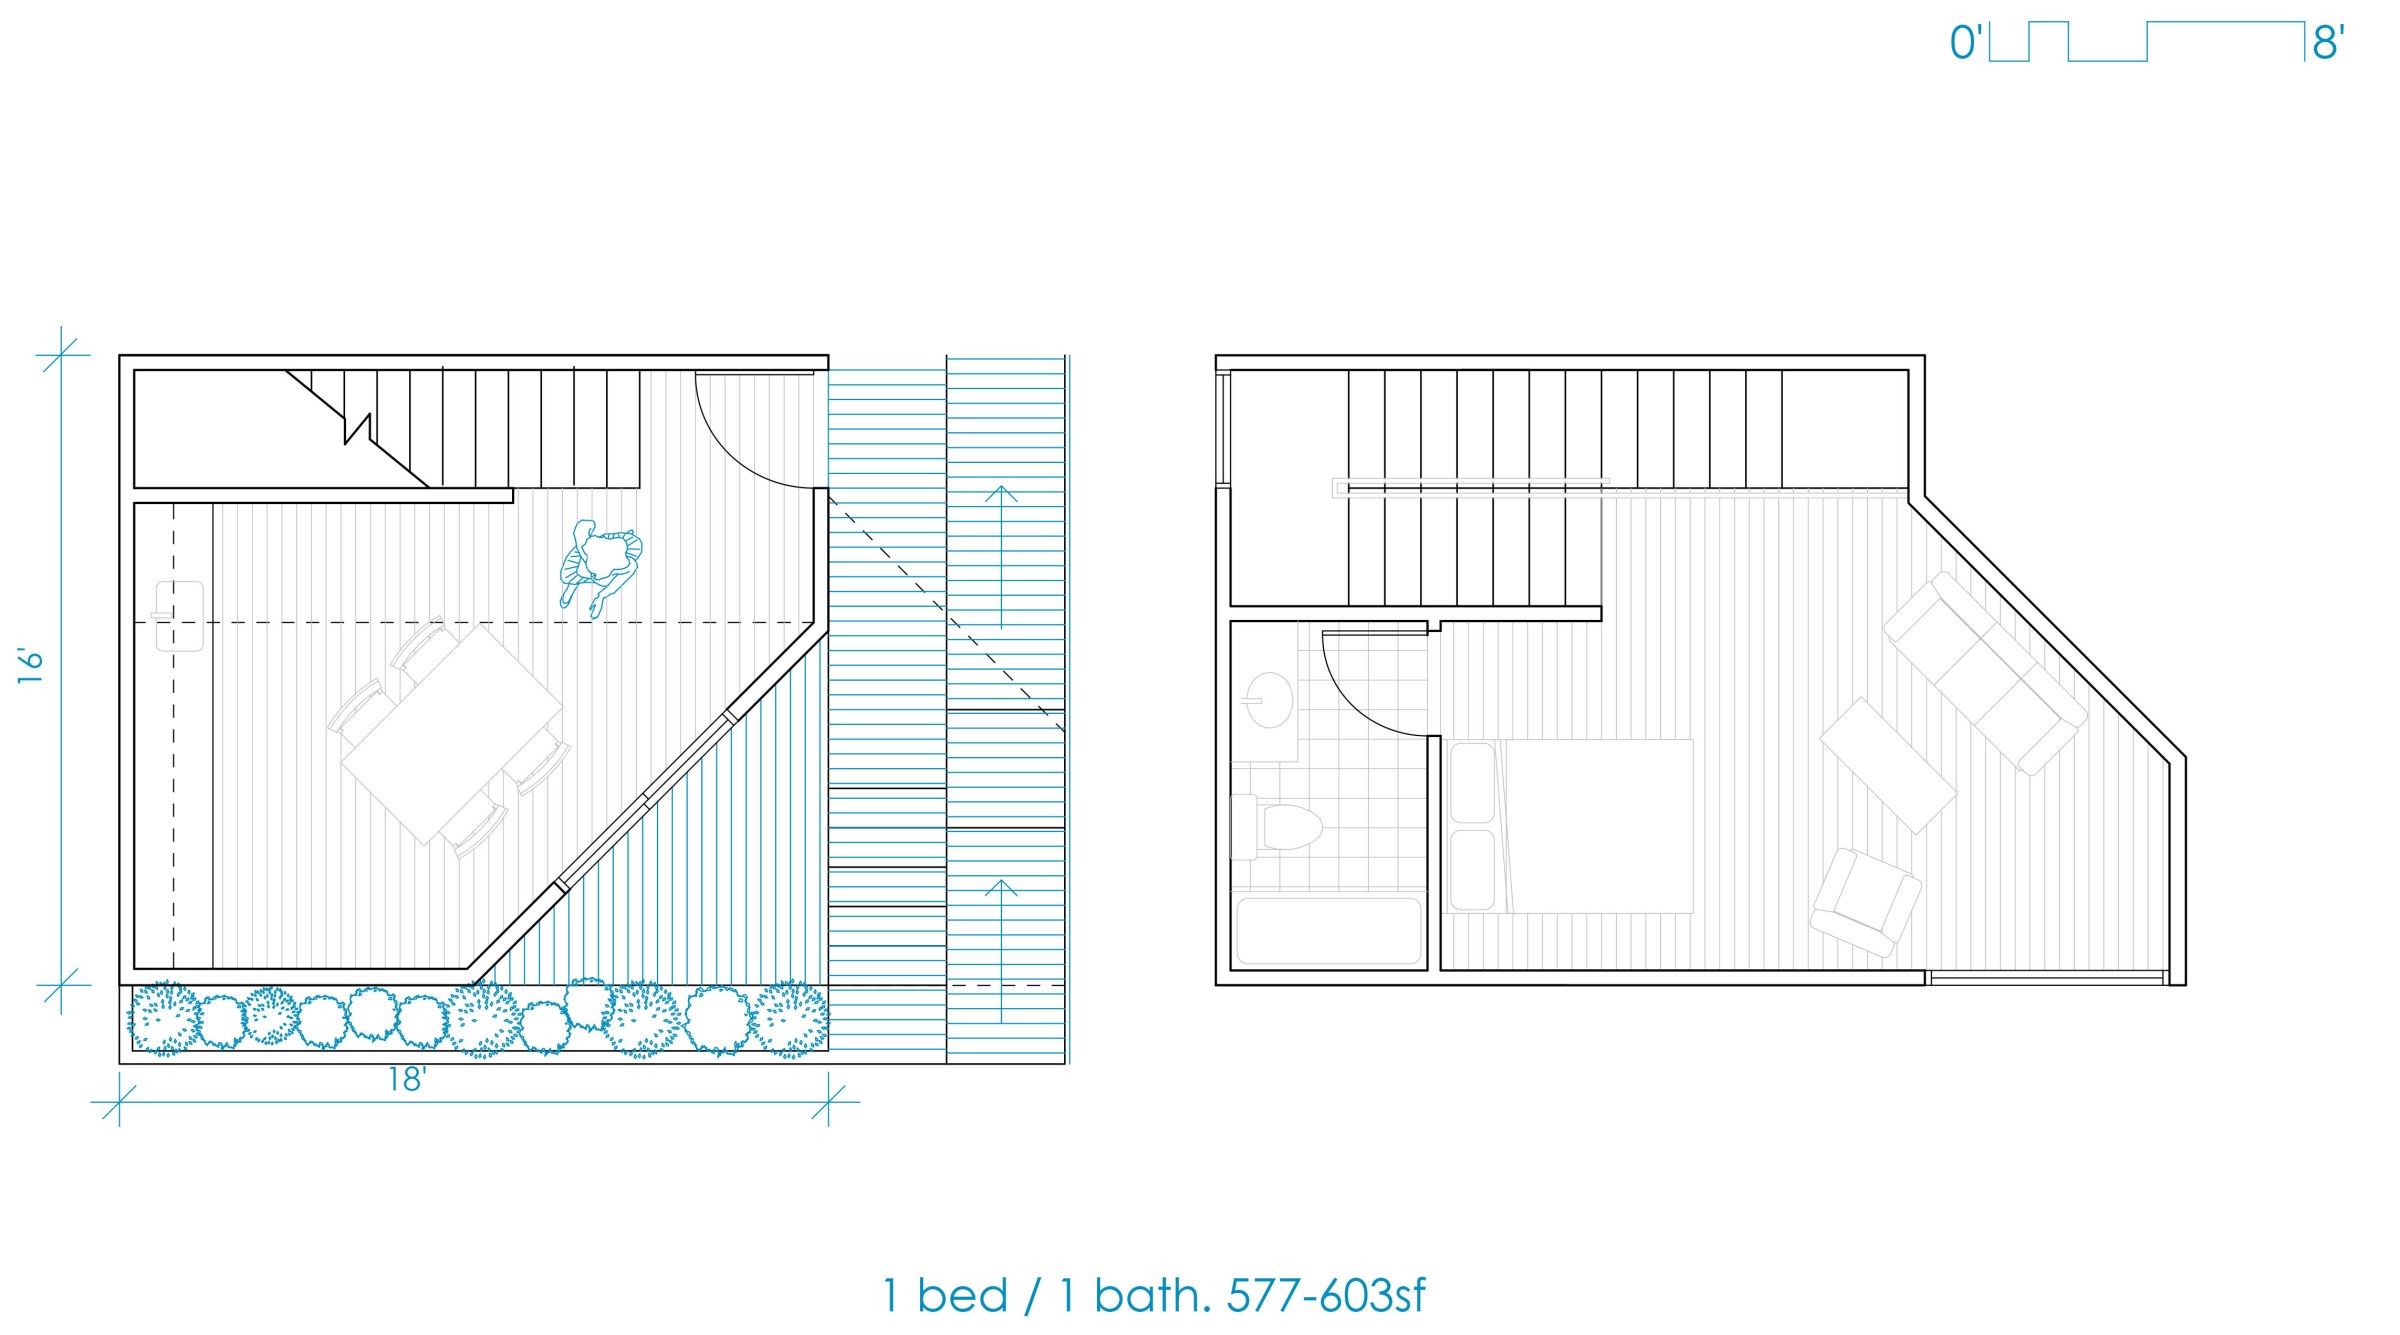 Daniel Tighe's thesis project: 1 bedroom 1 bathroom front floor plan, short